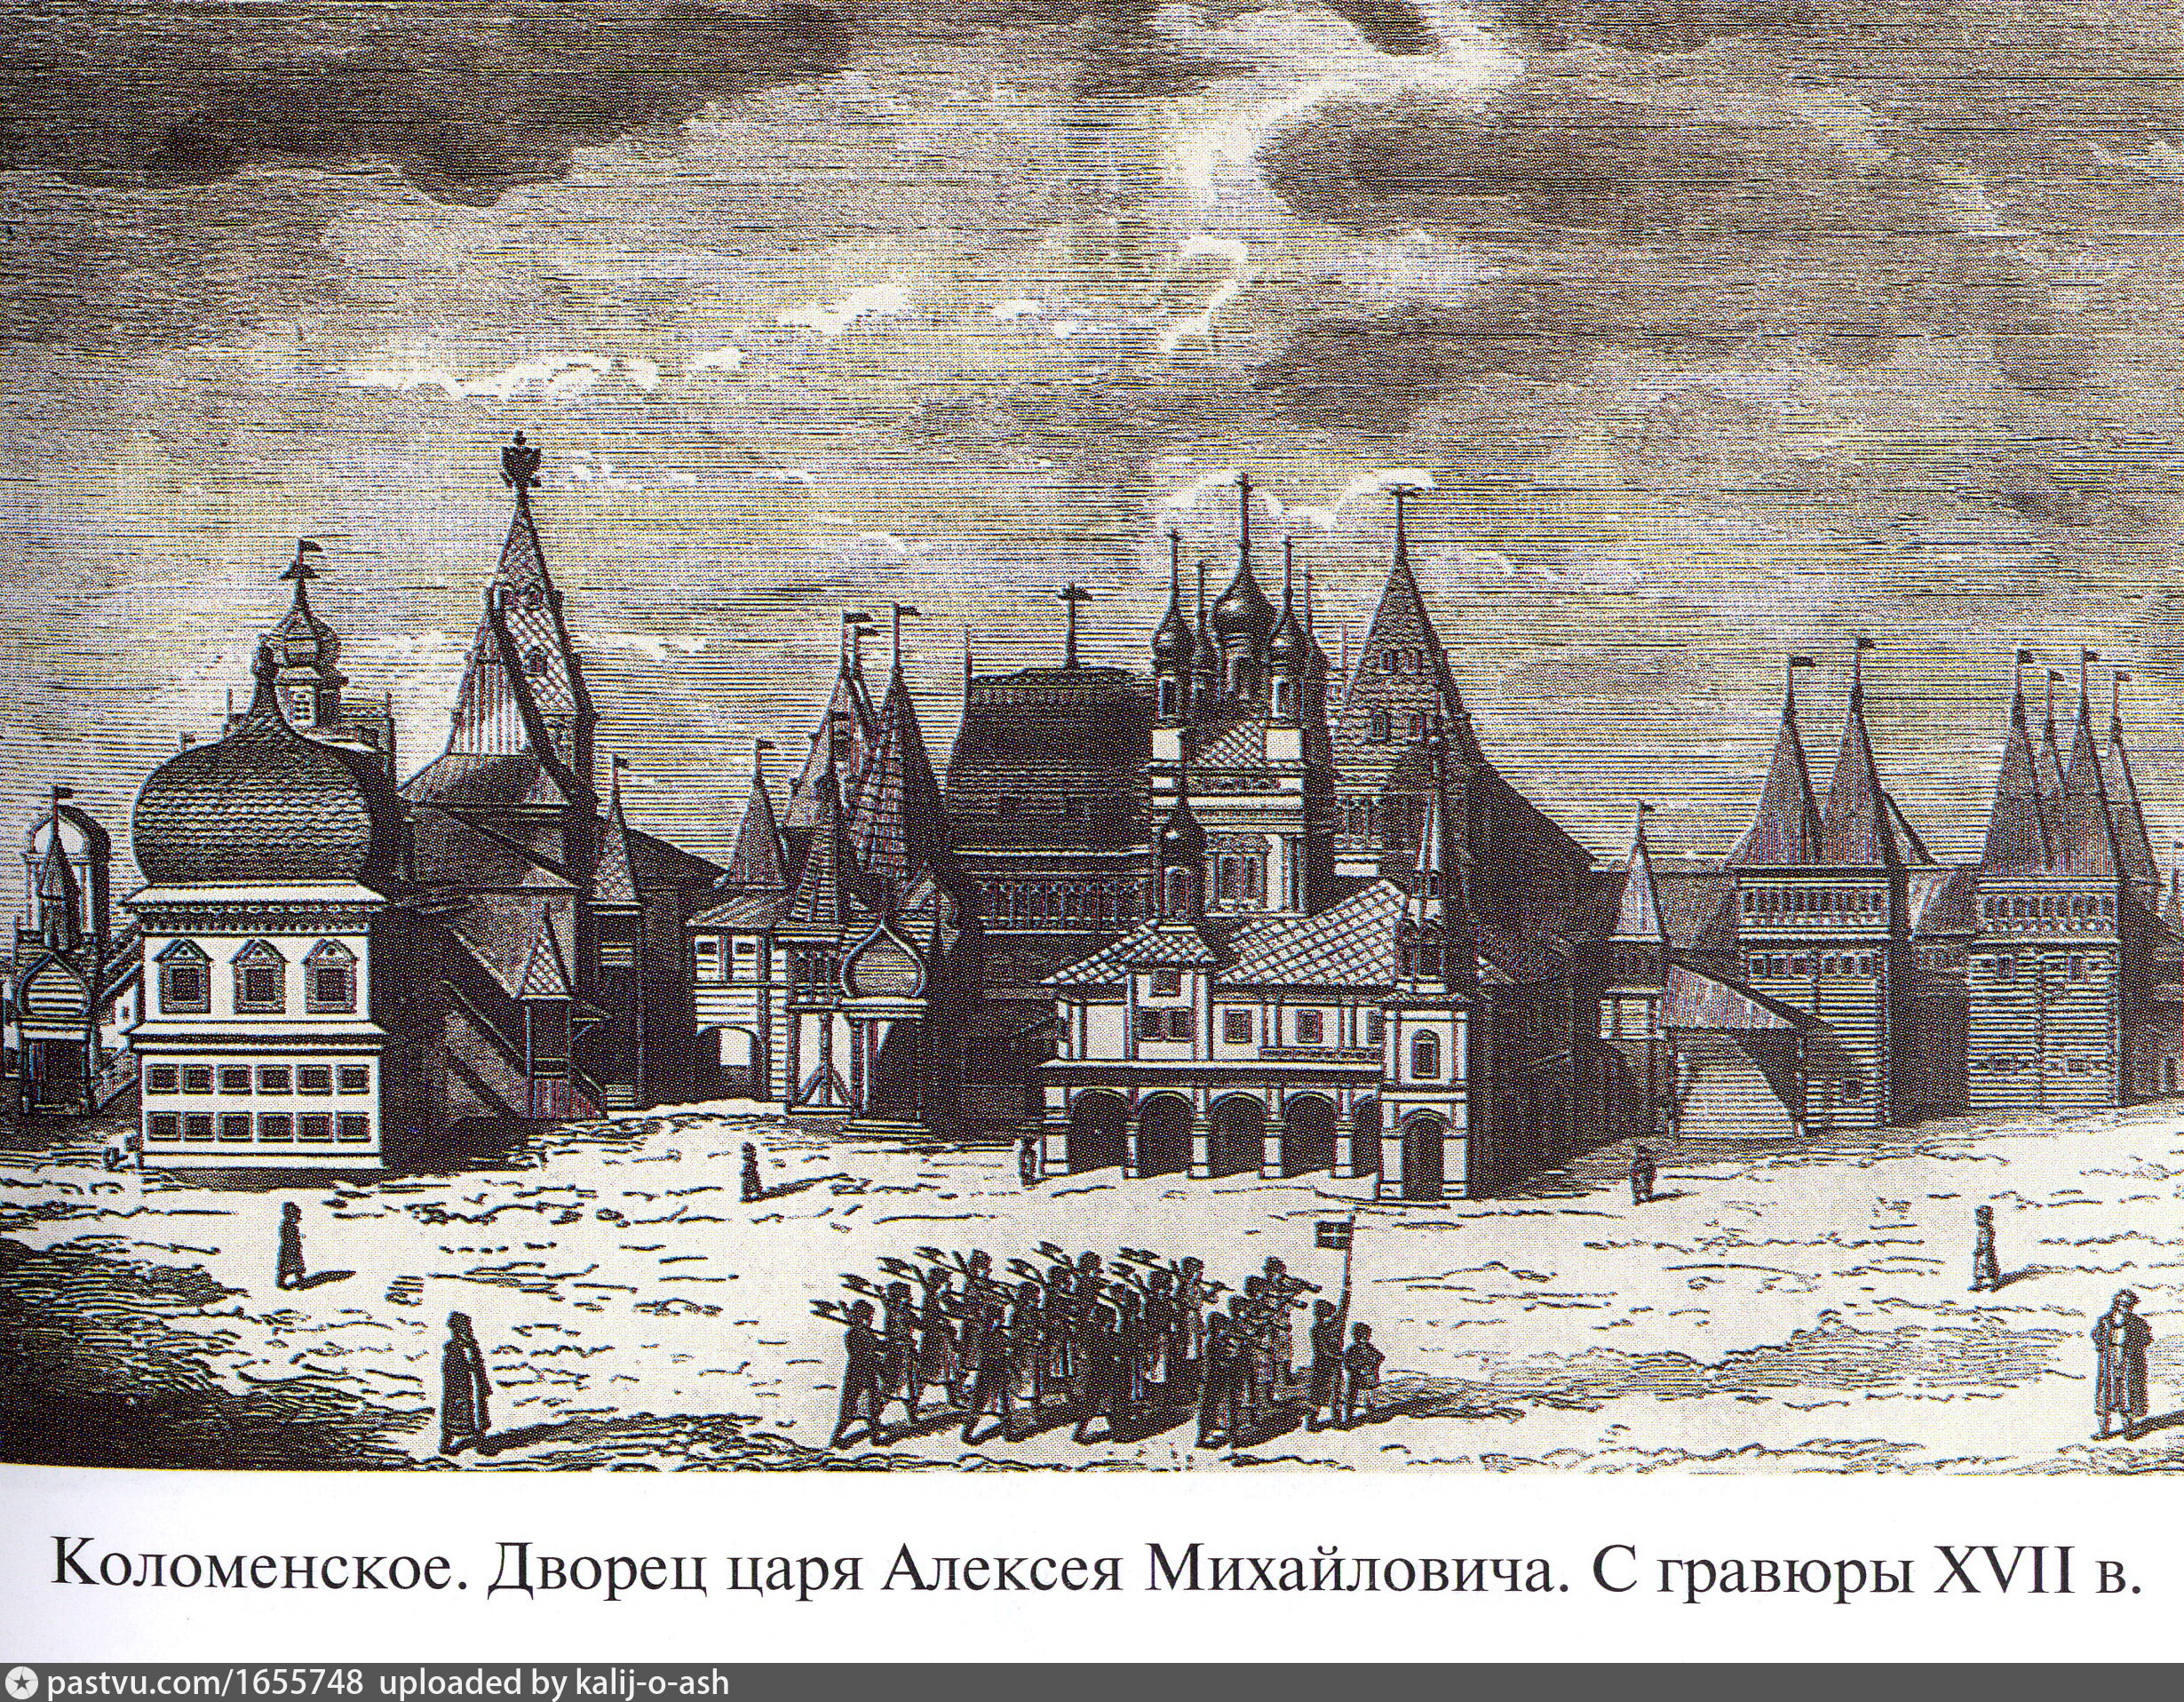 дворец алексея михайловича в коломенском 17 век